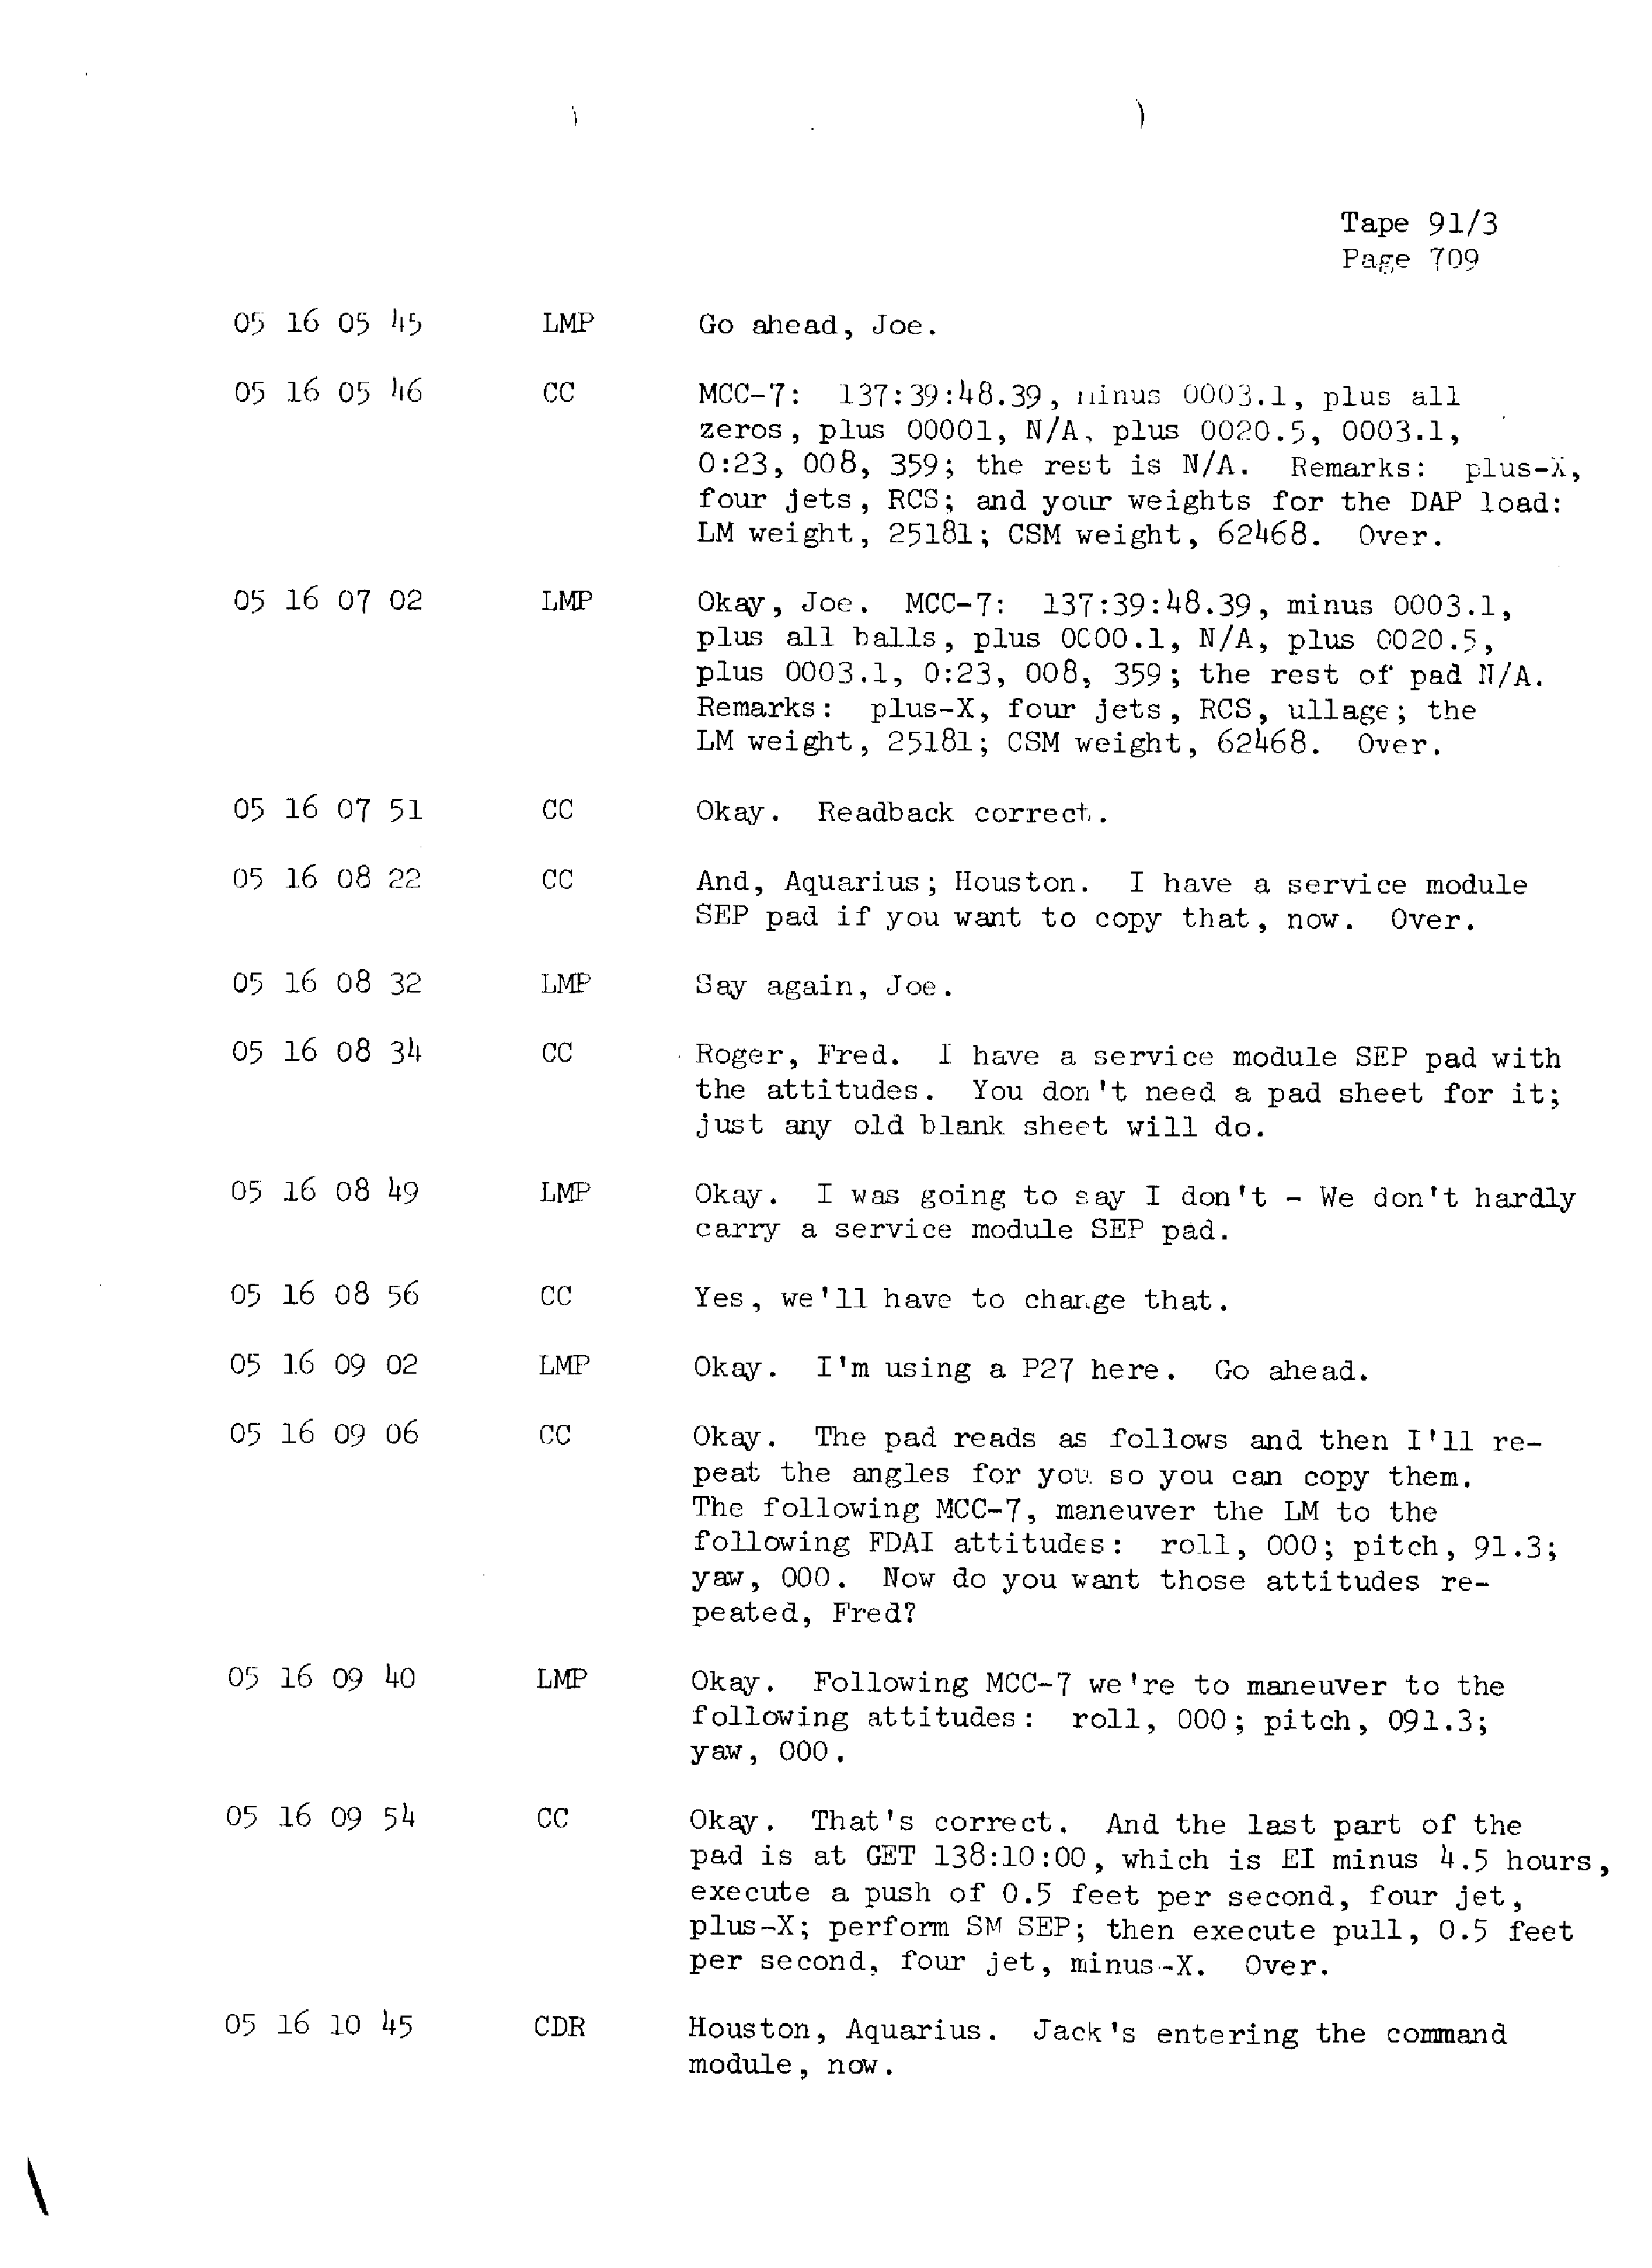 Page 716 of Apollo 13’s original transcript